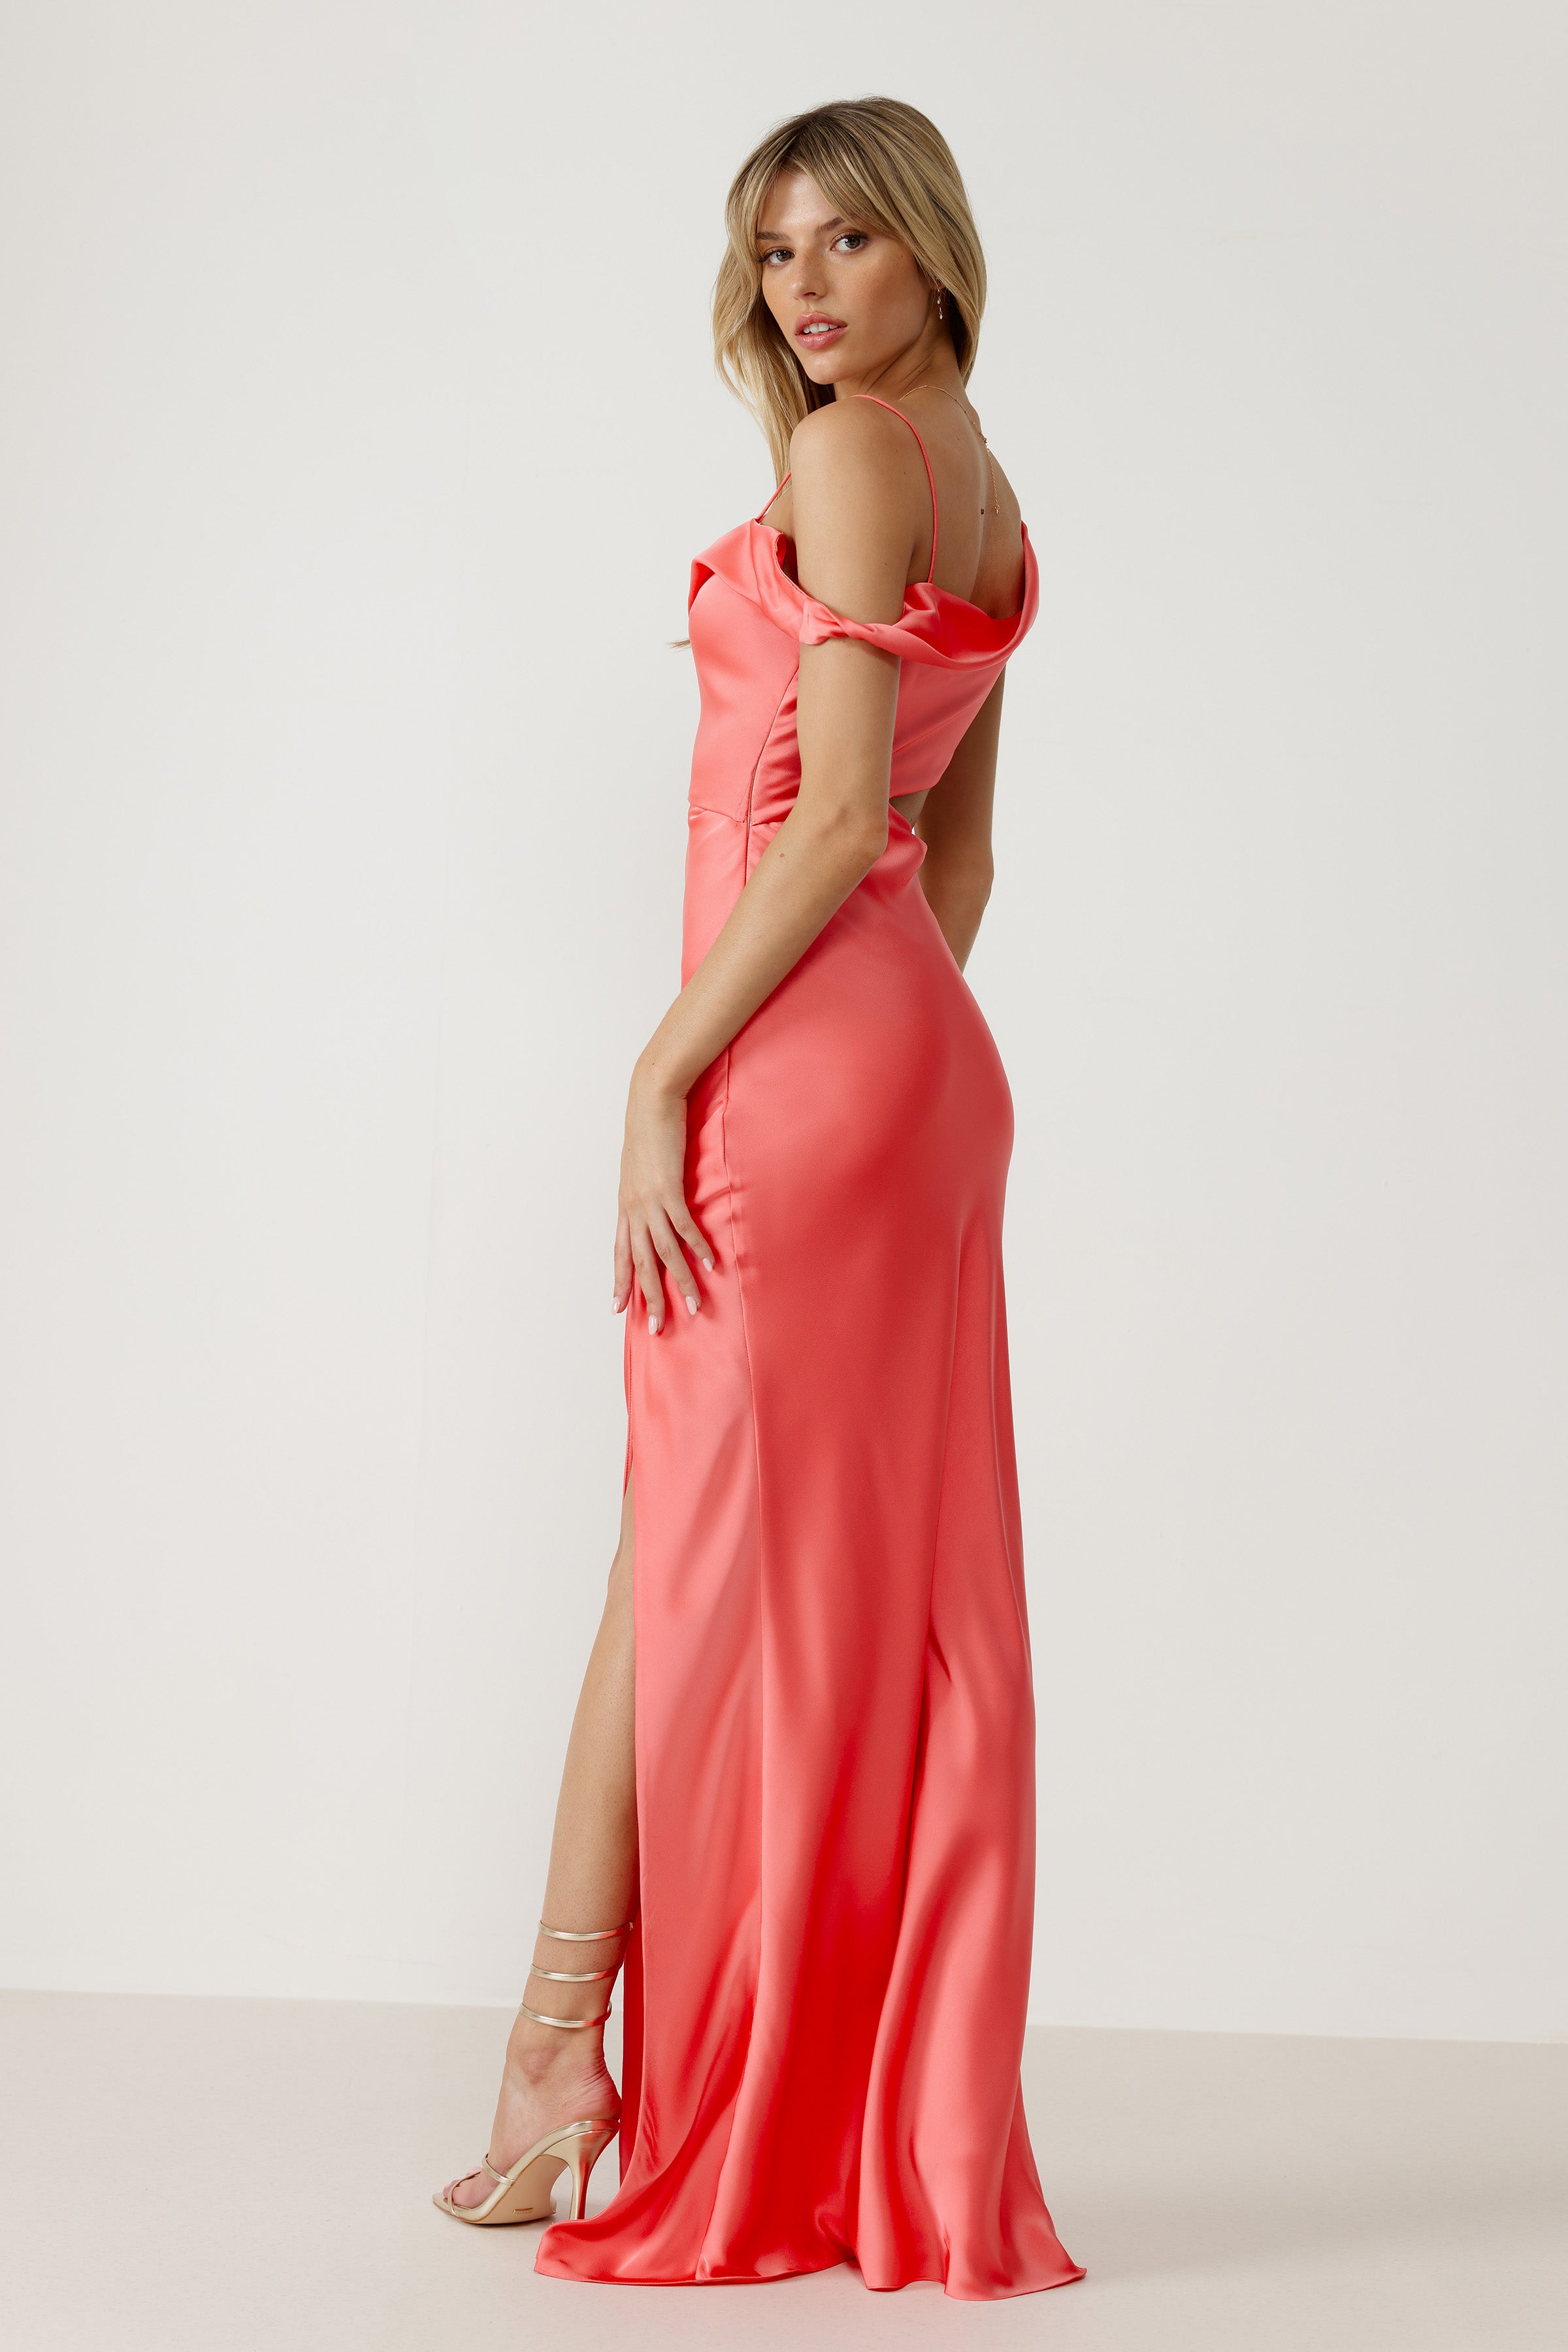 Zaria Dress - Watermelon